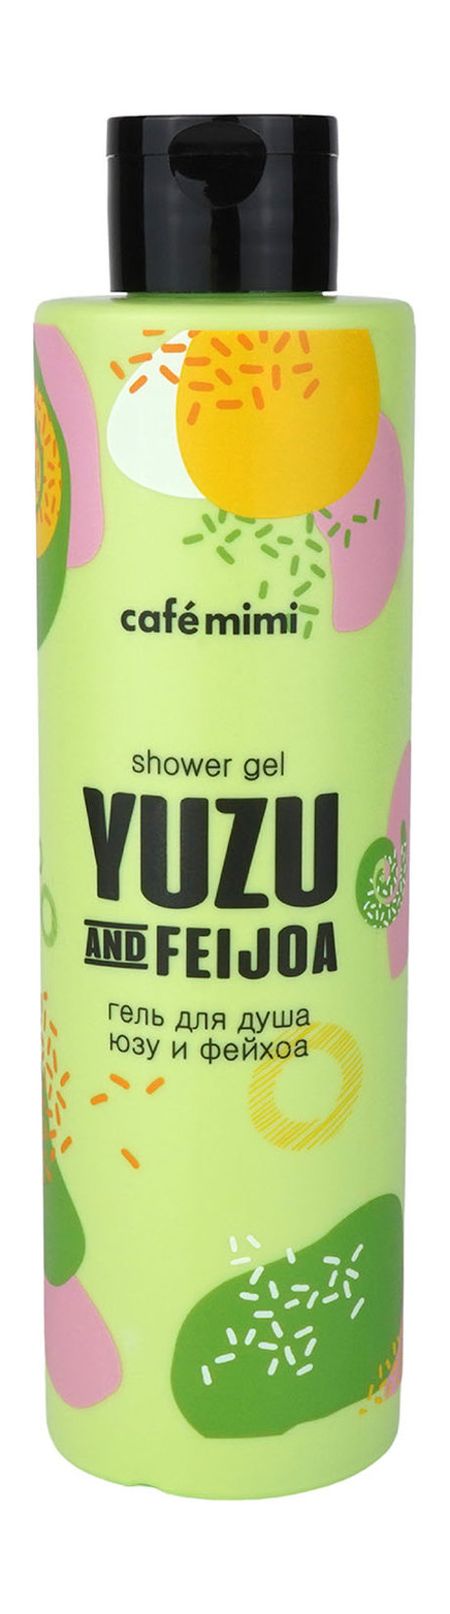 café mimi yuzu and feijoa shower gel